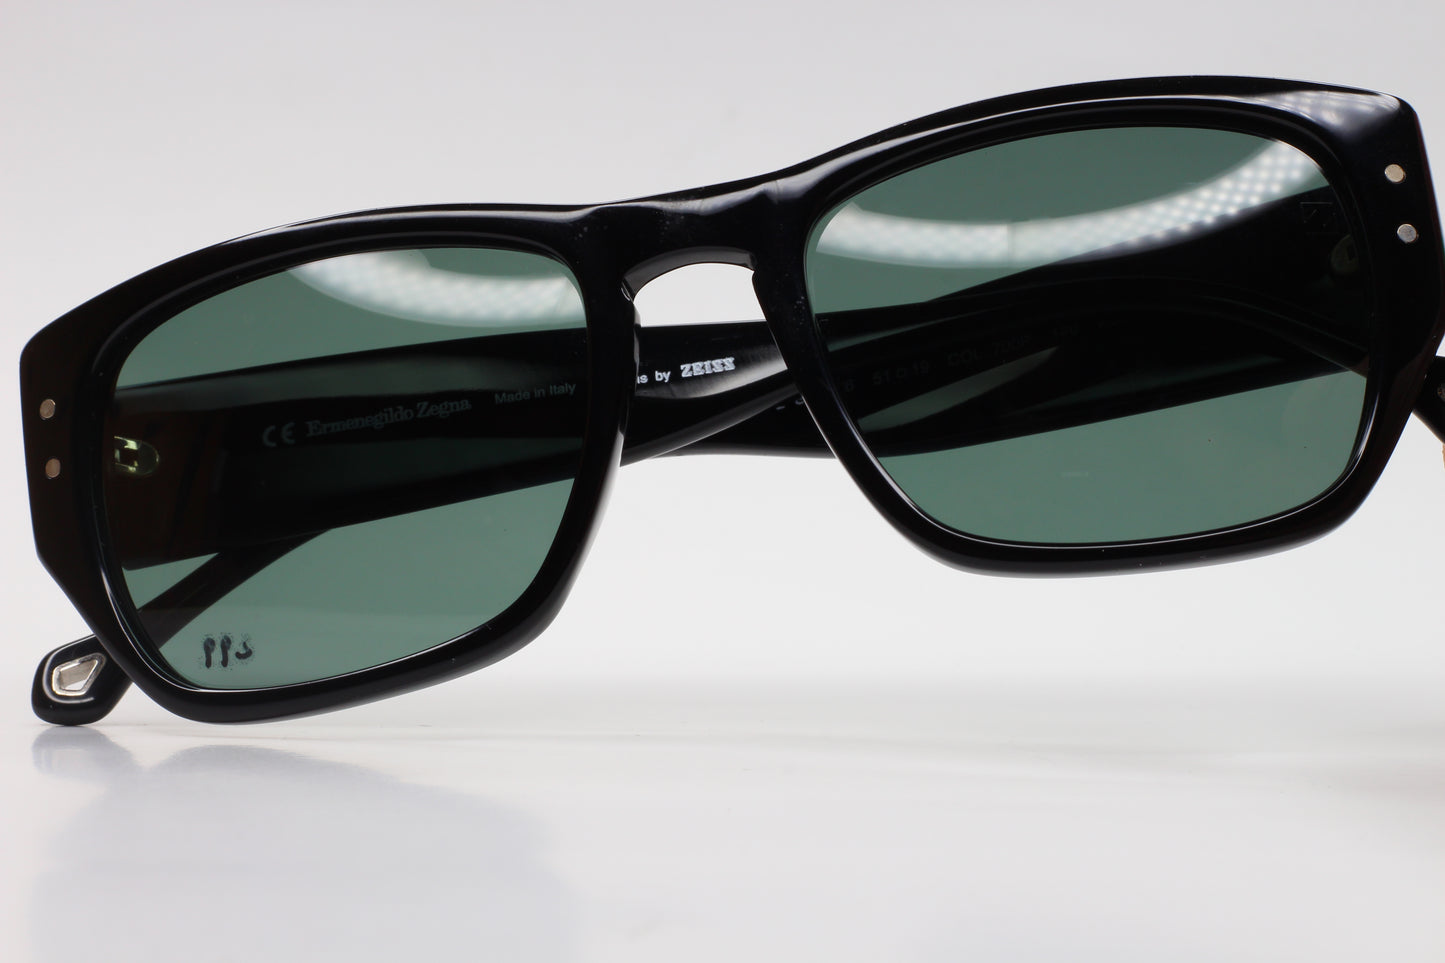 Ermenegildo Zegna SZ3626 700P Black Polarized Sunglasses -Ma